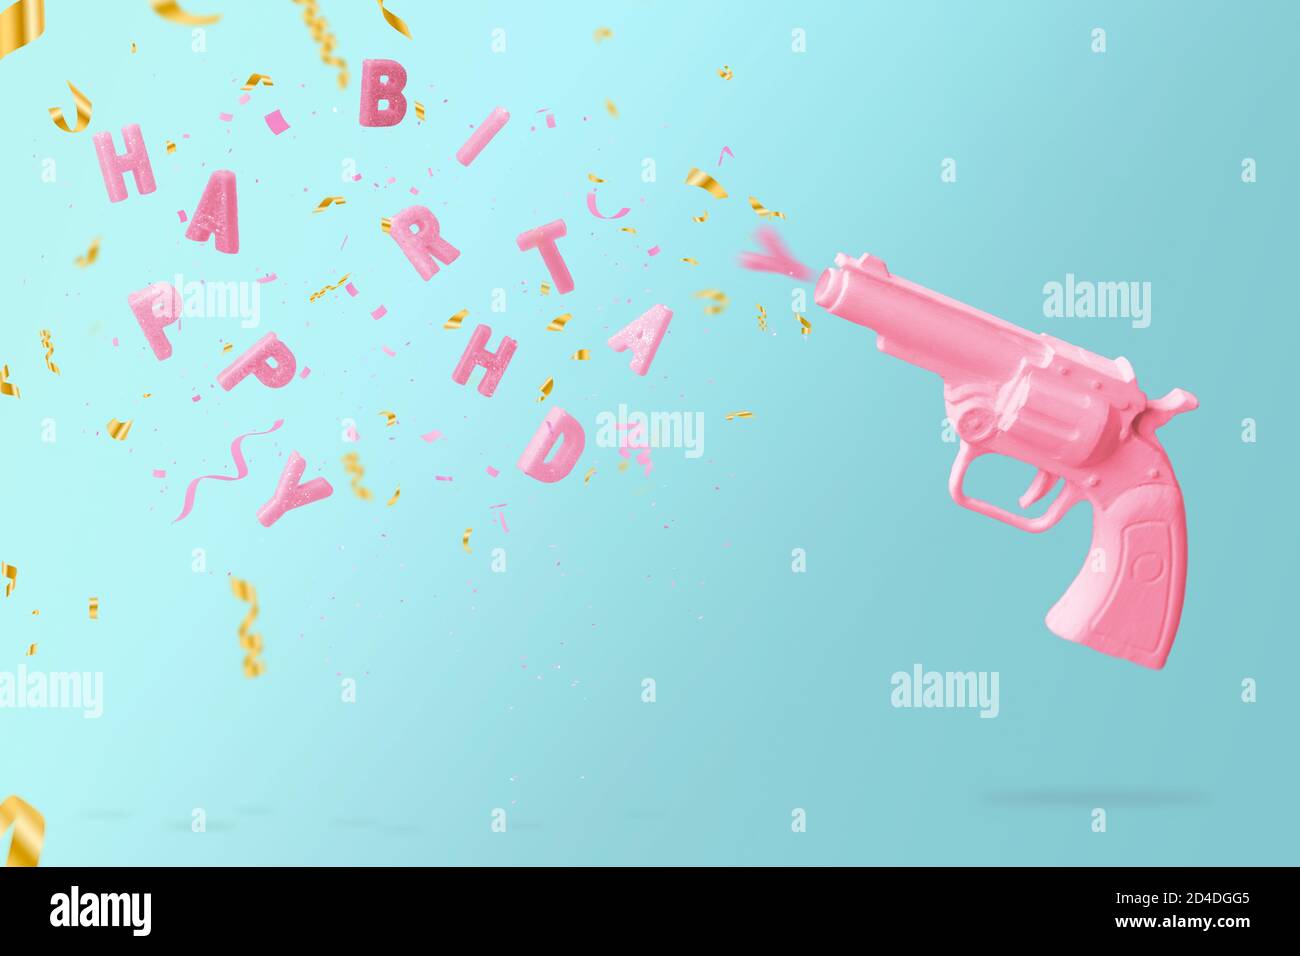 Bougie d'anniversaire de tir de canon rose et confetti colorés, sur fond bleu. Concept joyeux anniversaire avec espace copie Banque D'Images